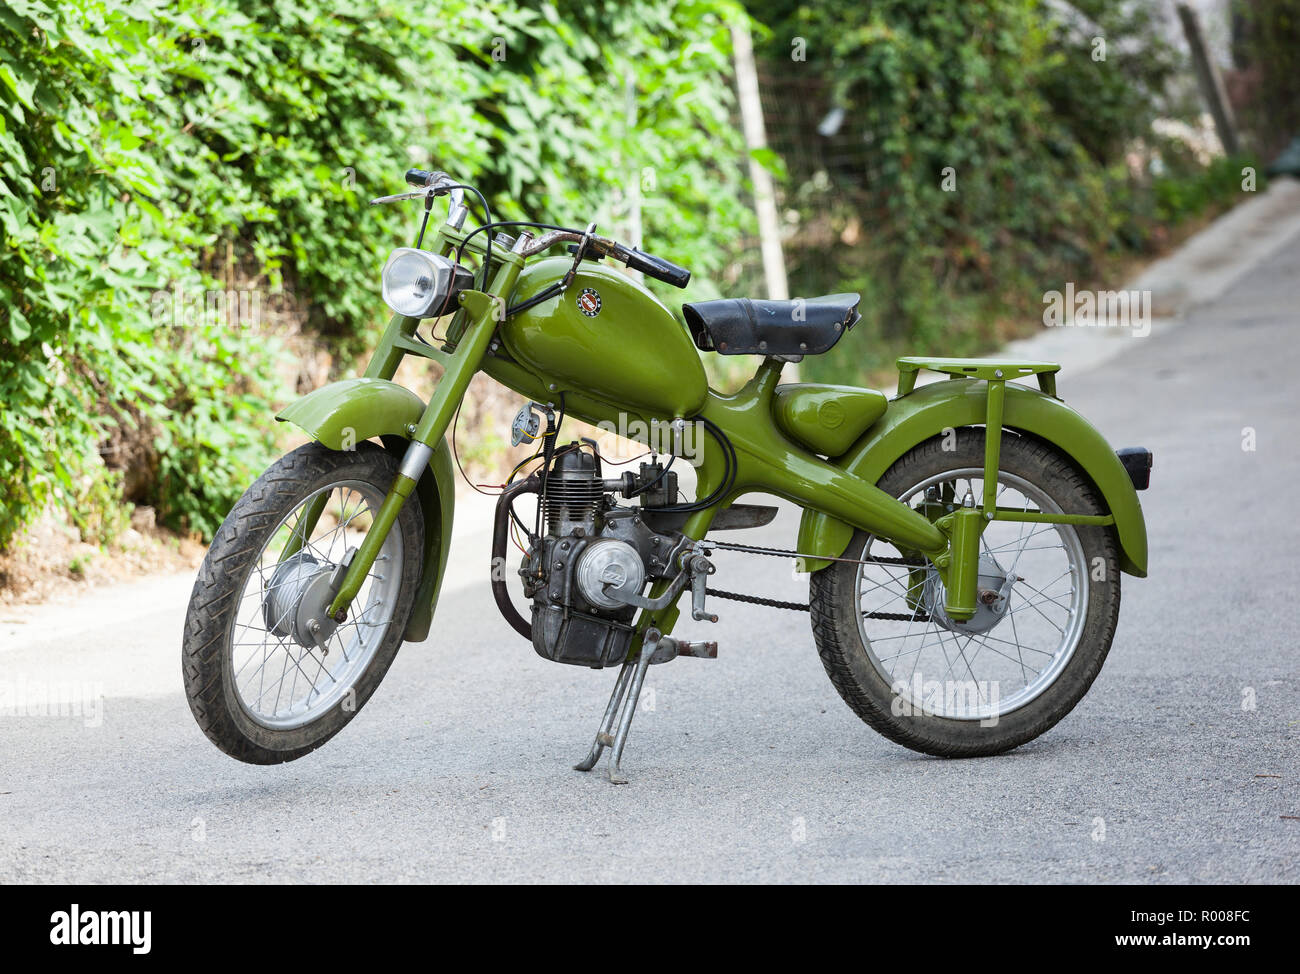 Teano, Italia - Julio 29, 2012: vintage moto italiana Motom 48, bajo consumo de combustible del motor de cuatro tiempos. Motom era una motocicleta milanés empresa activa Foto de stock